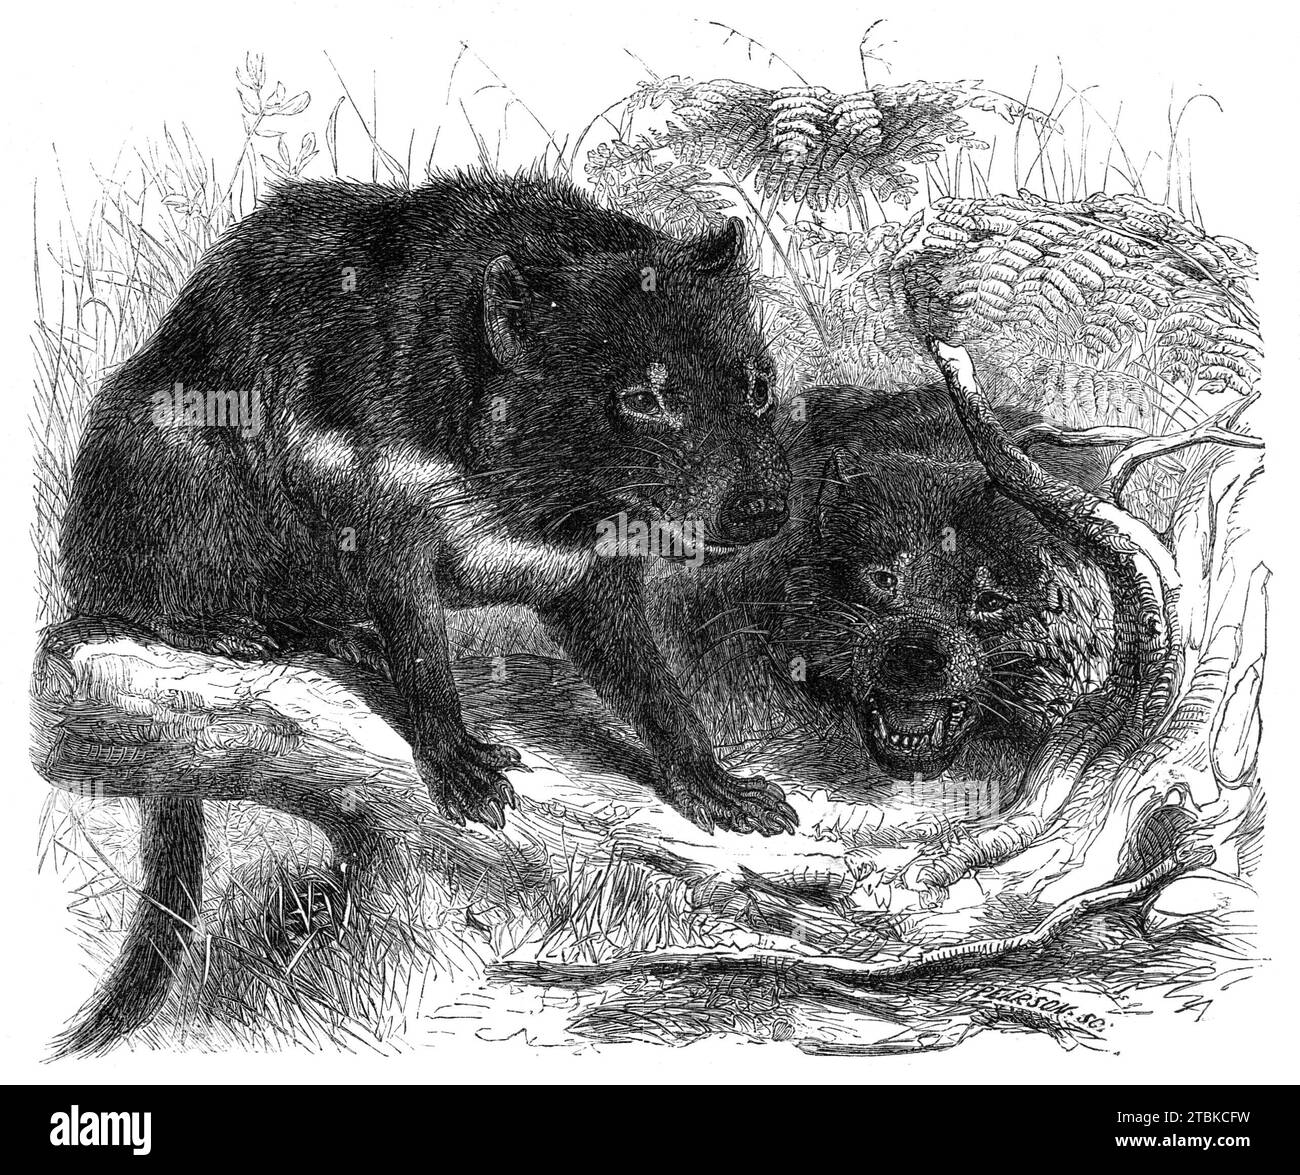 The Ursine Dasyure, o Tasmanian Devil (Dasyurus ursinus), 1861. "...un bell'esempio recentemente aggiunto alla collezione della Zoological Society of London, probabilmente l'unico individuo di questa specie che vive in Europa. Appartiene al gruppo di marsupiali carnivori... ed è notevole per la sua indole selvaggia e indomabile, da cui ha acquisito dai coloni in Tasmania il nome del "Diavolo", o "Diavolo nativo". La sua forma un po' brutta, e l'aspetto nero, poco attraente, potrebbe, forse, hanno contribuito a far sì che questa denominazione le venga conferita. "Questi anim Foto Stock